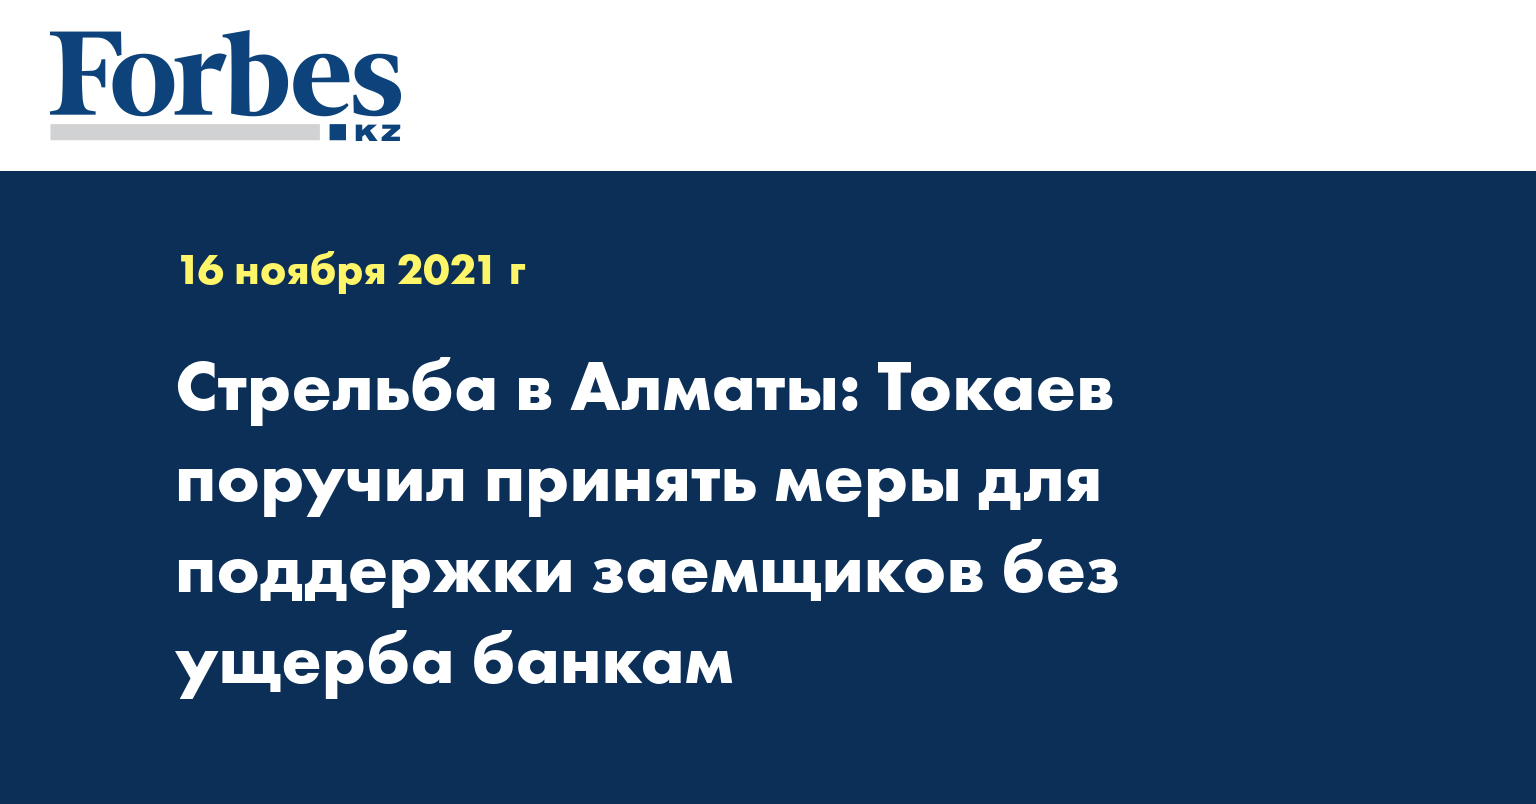 Стрельба в Алматы: Токаев поручил принять меры для поддержки заемщиков без ущерба банкам